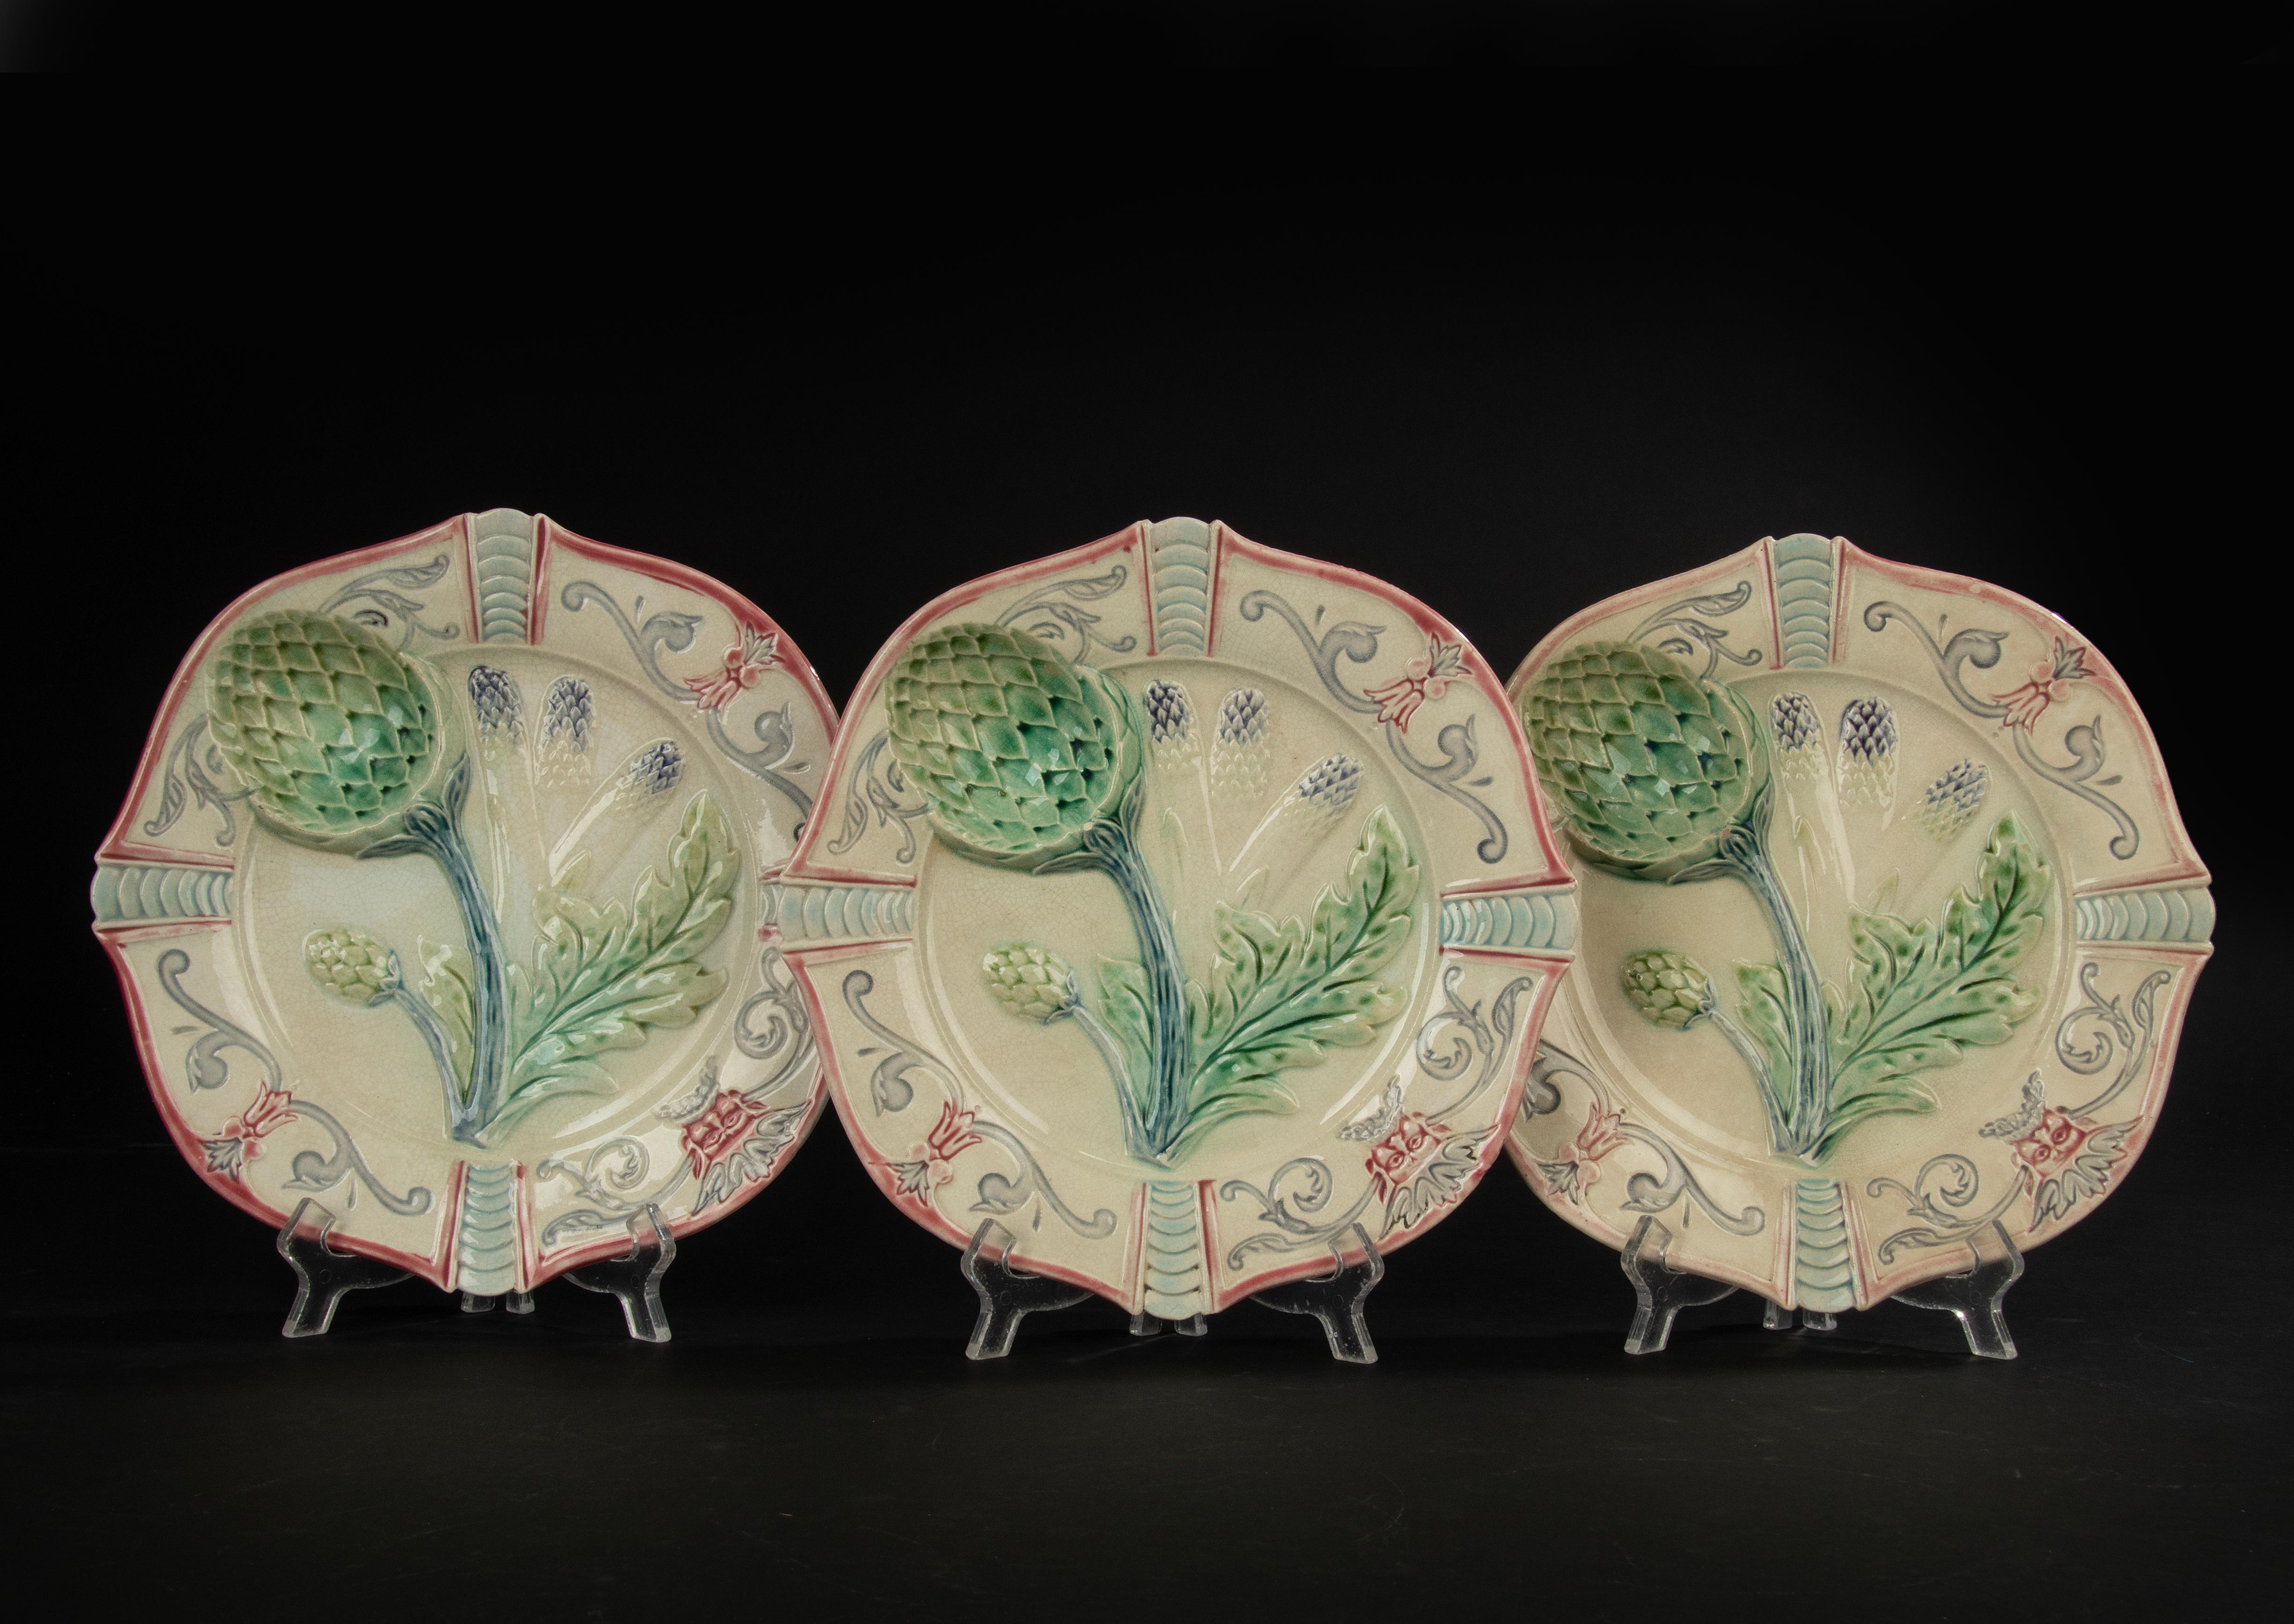 Eine schöne Reihe von 3 Keramik Majolika Teller. Die Teller haben schöne Dekorationen mit Artischocken und Spargel. Die Platten sind markiert, aber die Marke ist nicht bekannt. Das könnten Kueller und Guérin sein. 
Die Teller sind in gutem Zustand,